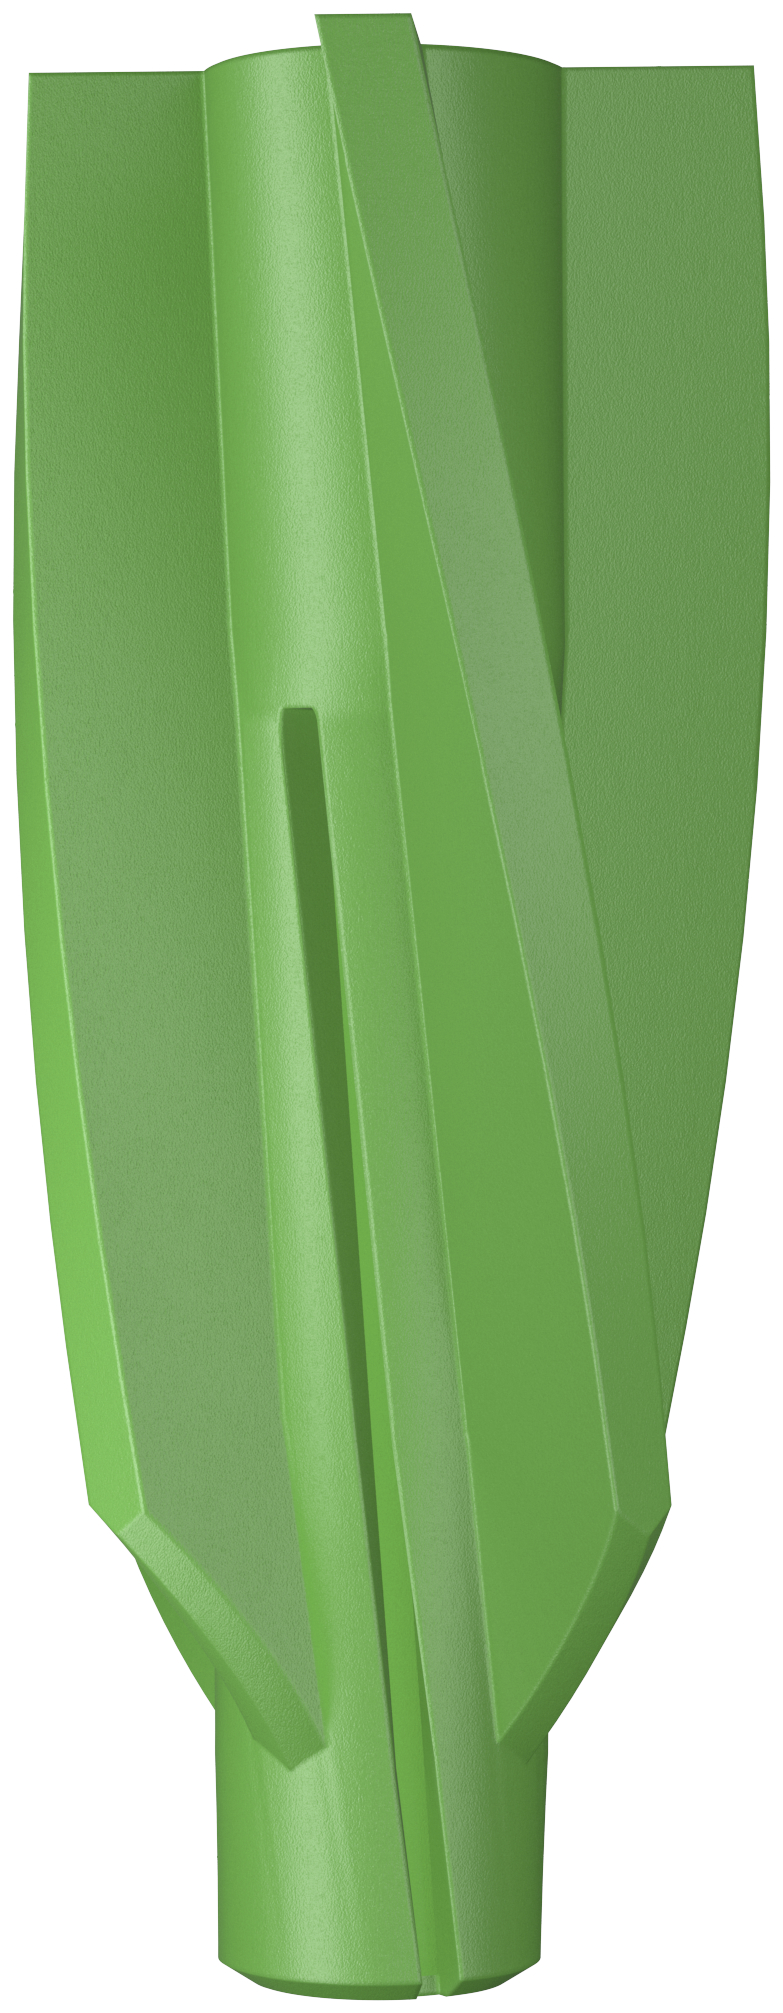 Imagen para la categoría Gasbetondübel GB Green